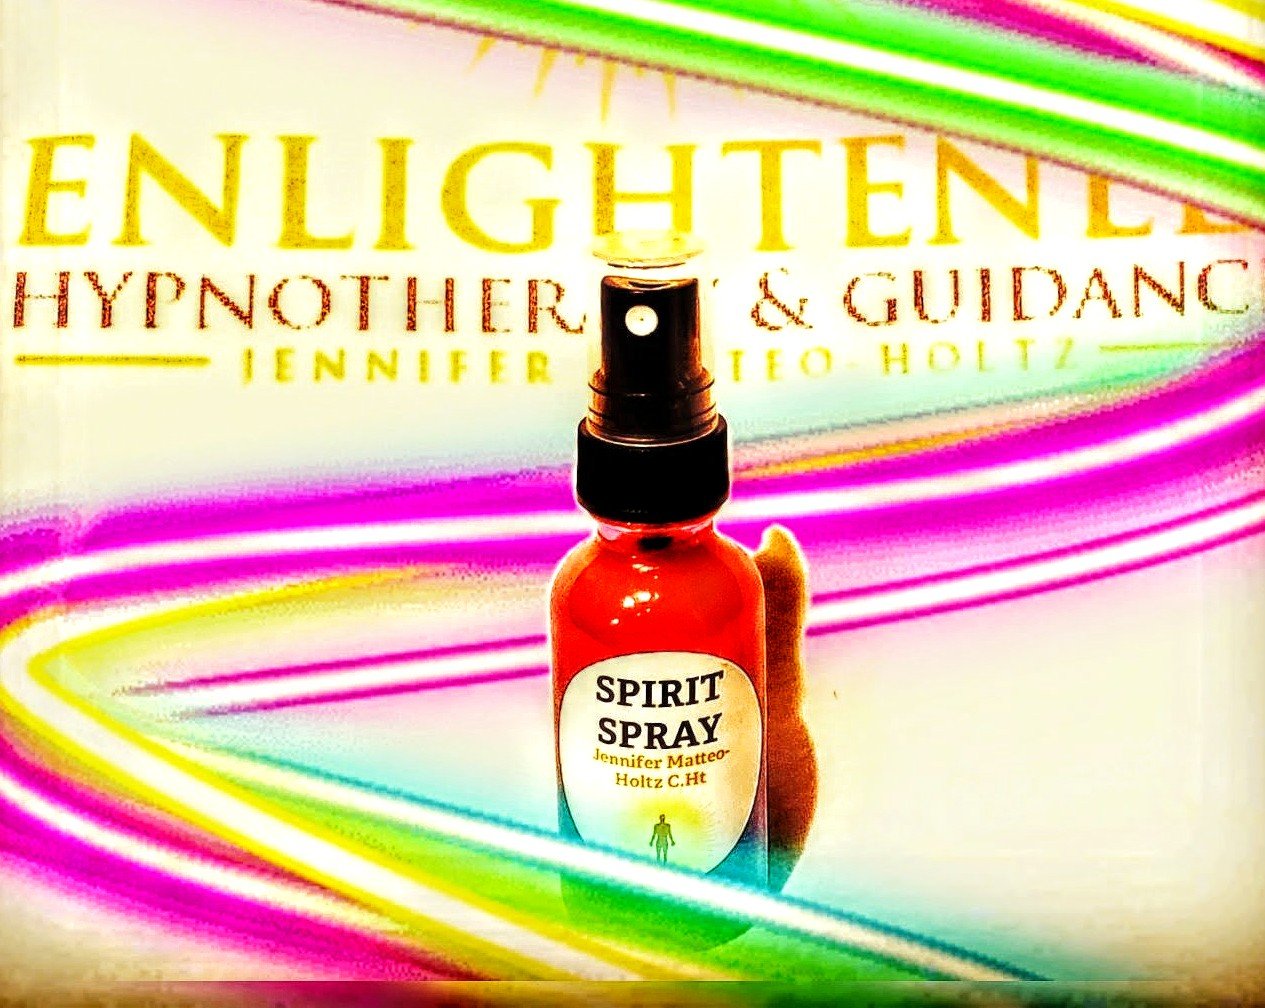 Enlightened Spirit Spray